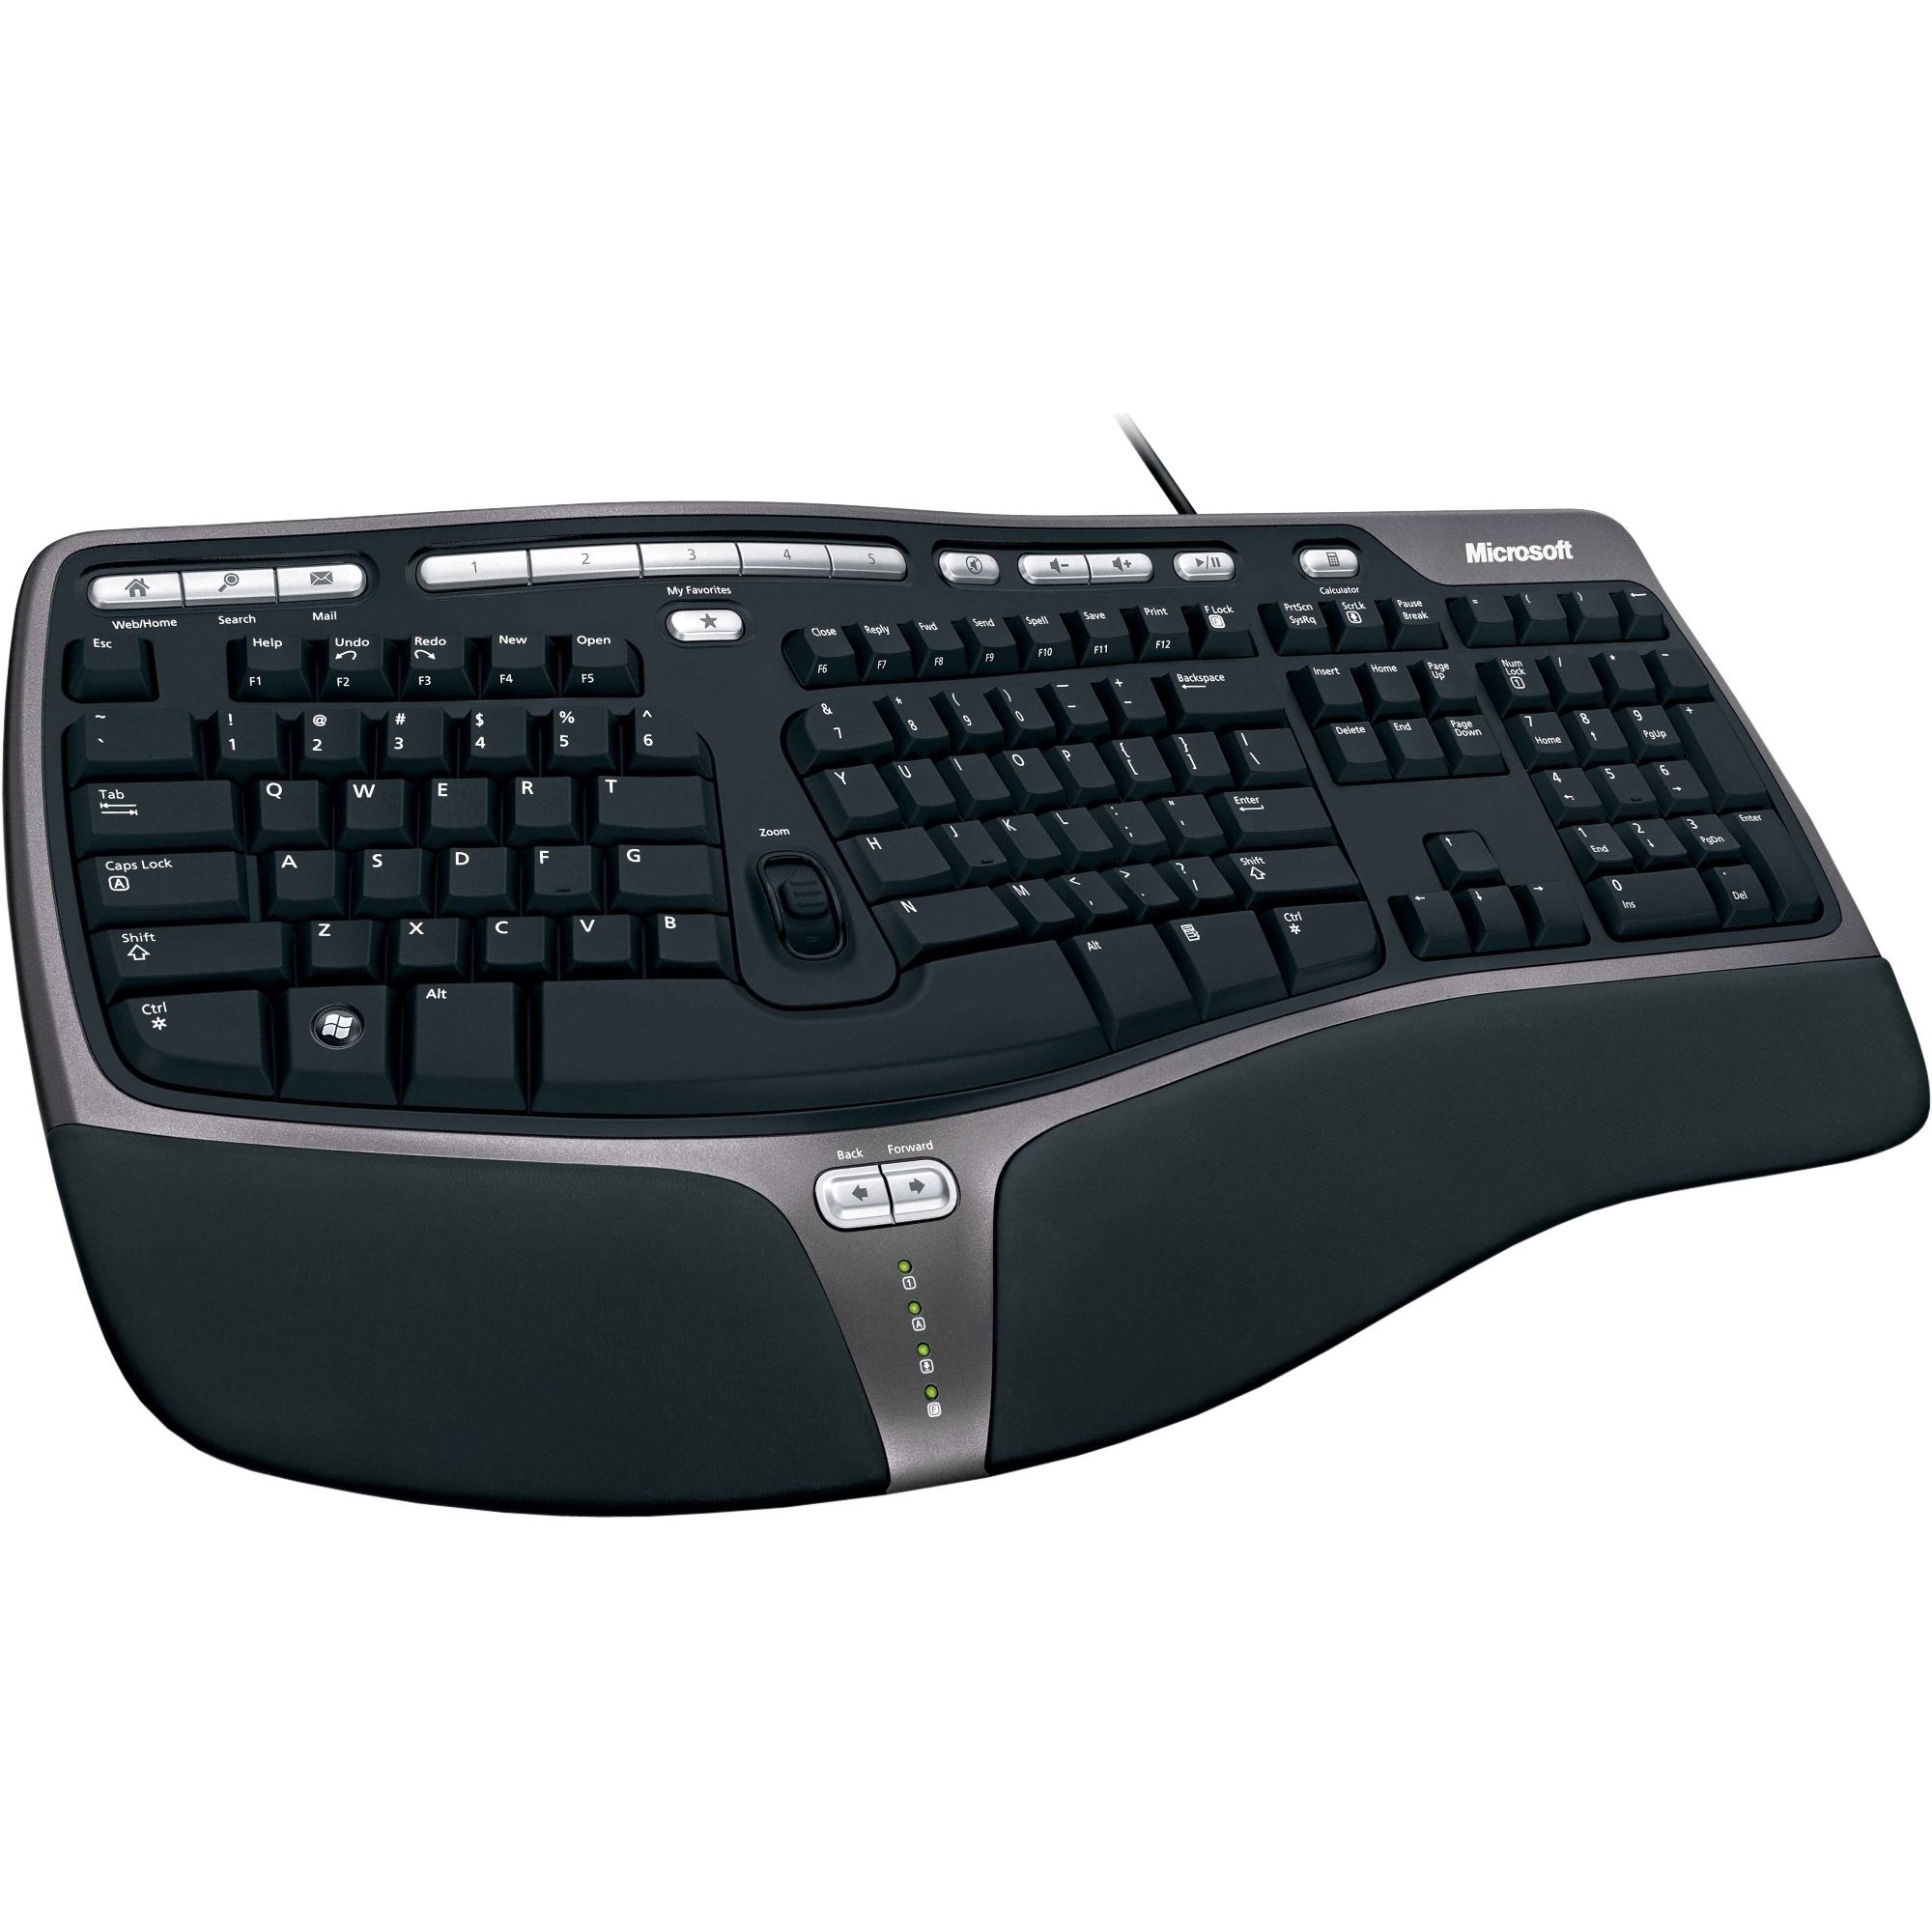  Tastatura Microsoft Natural Ergo 4000, USB 